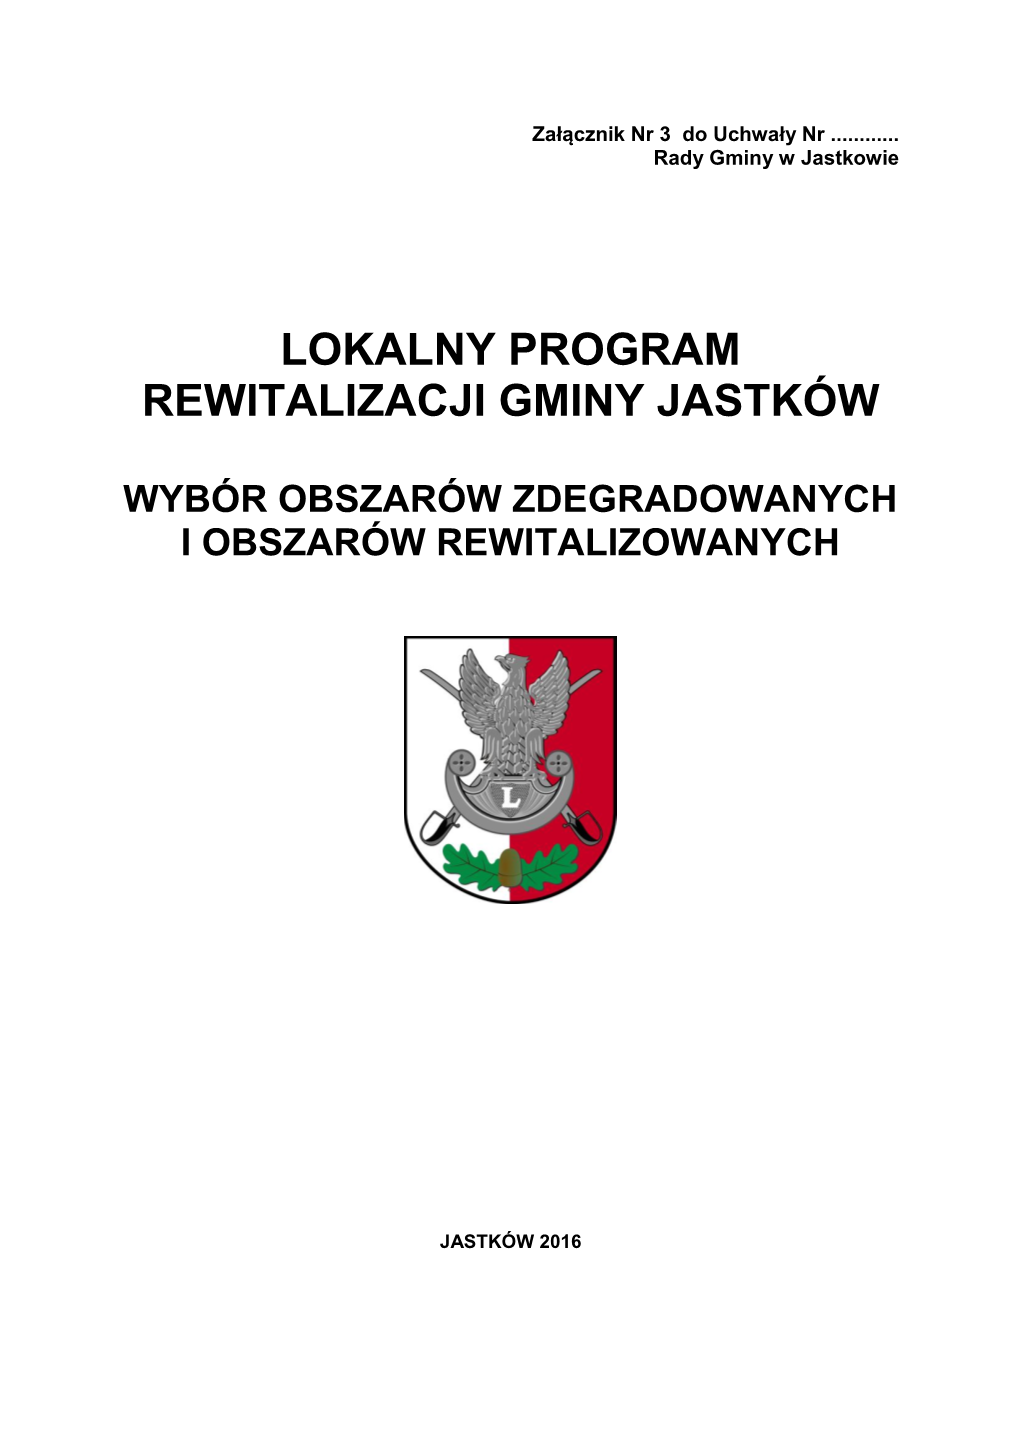 Lokalny Program Rewitalizacji Gminy Jastków